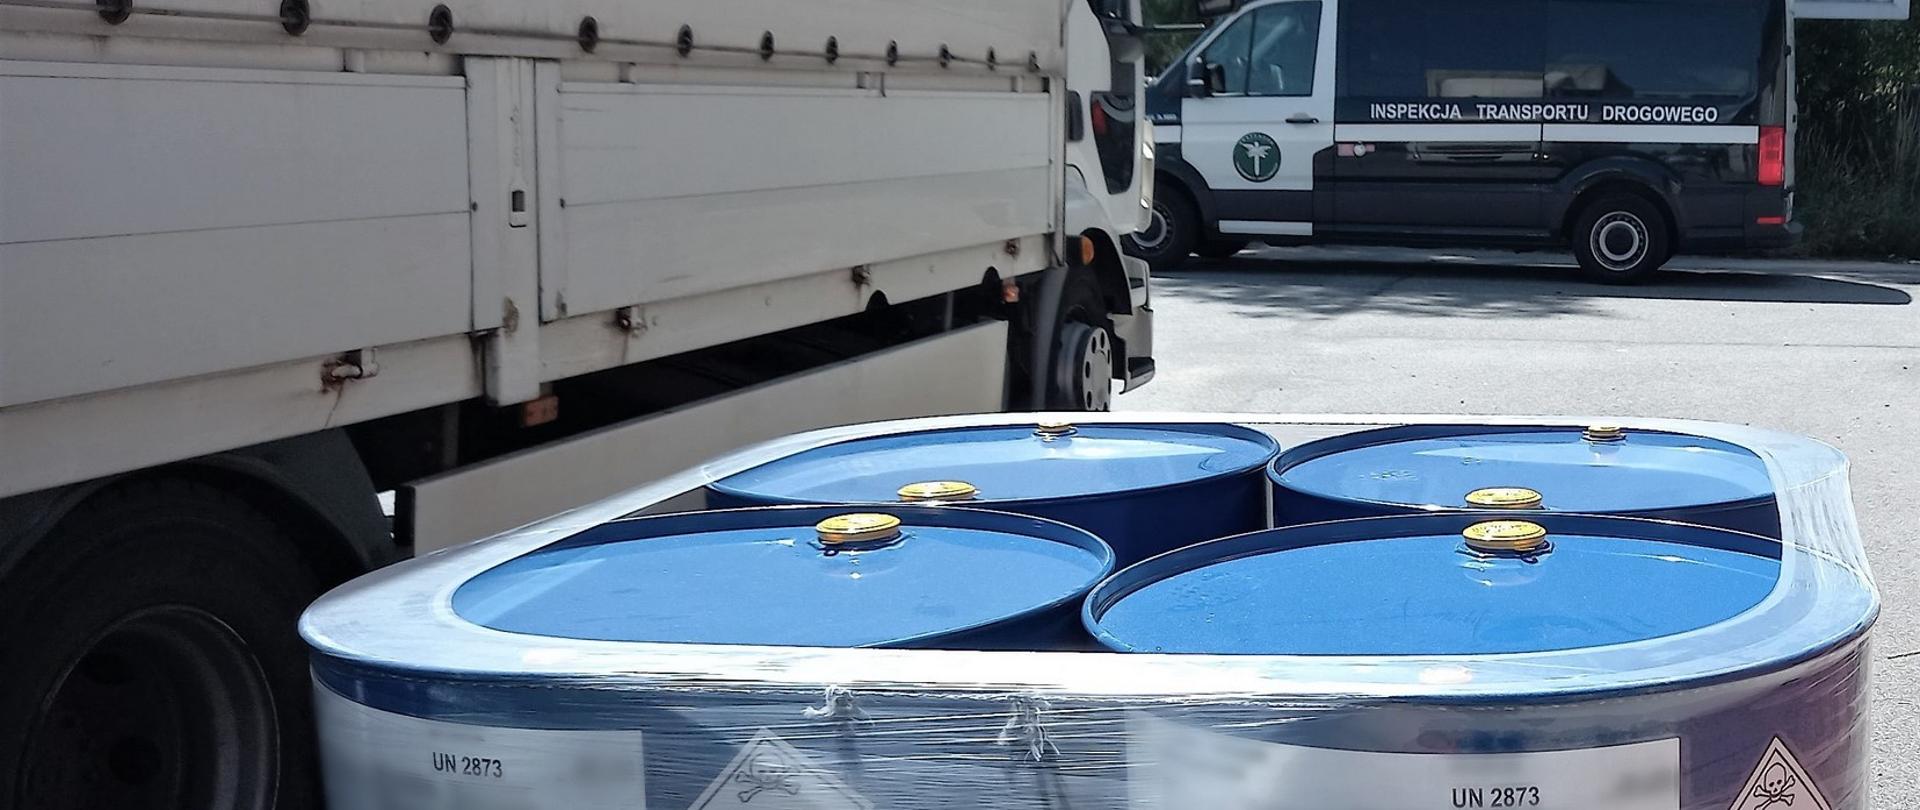 Na pierwszym planie: beczki z materiałem niebezpiecznym ADR i zatrzymana do kontroli ciężarówka. W tle: oznakowany furgon wielkopolskiej Inspekcji Transportu Drogowego.